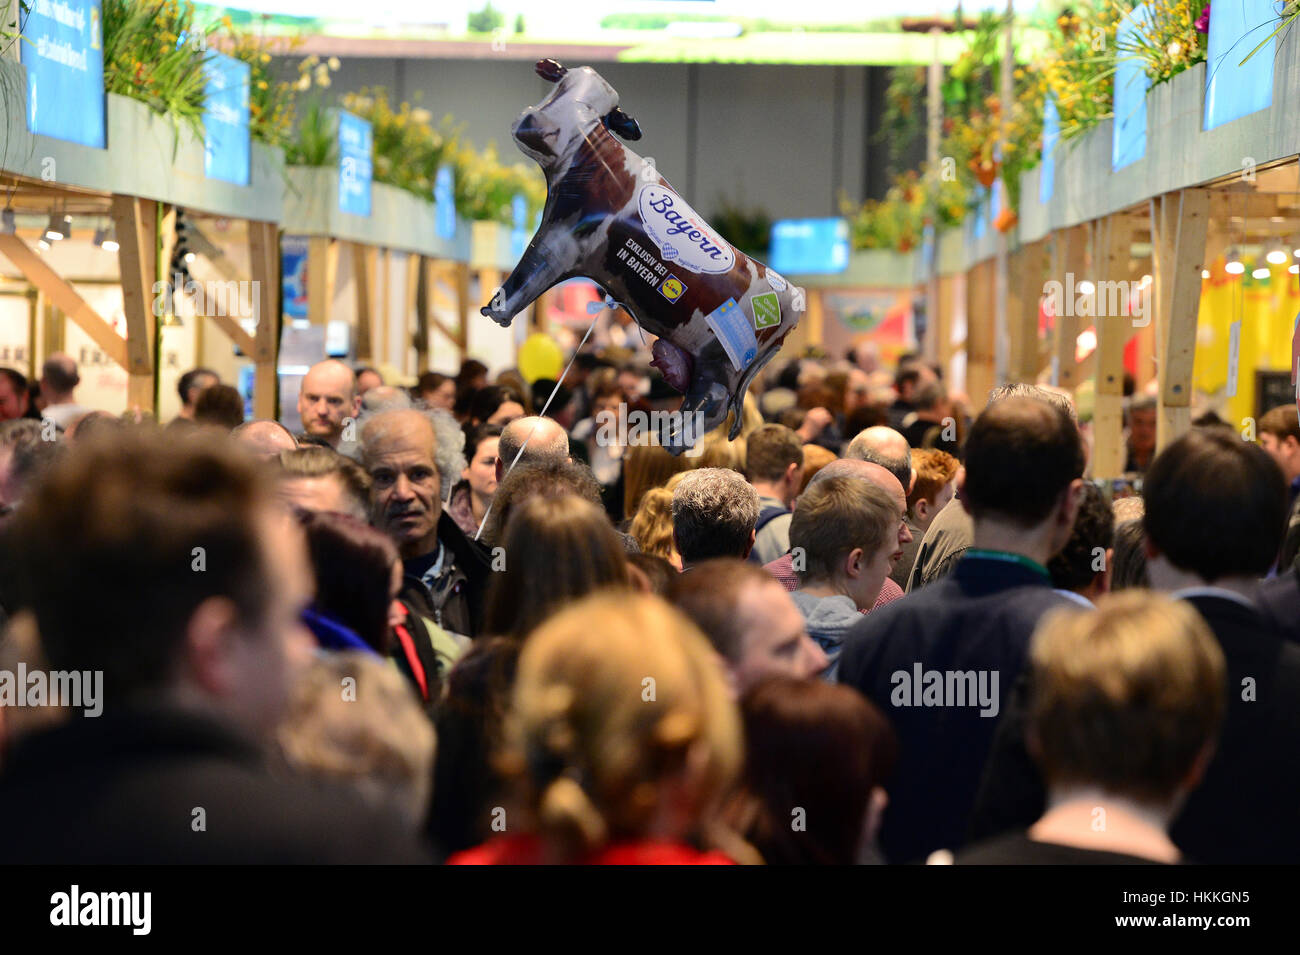 Berlín, Alemania. 29 ene, 2017. Los visitantes disfrutan del último día de la semana griega Internacional en Berlín, Alemania, el 29 de enero de 2017. Foto: Maurizio Gambarini/dpa/Alamy Live News Foto de stock